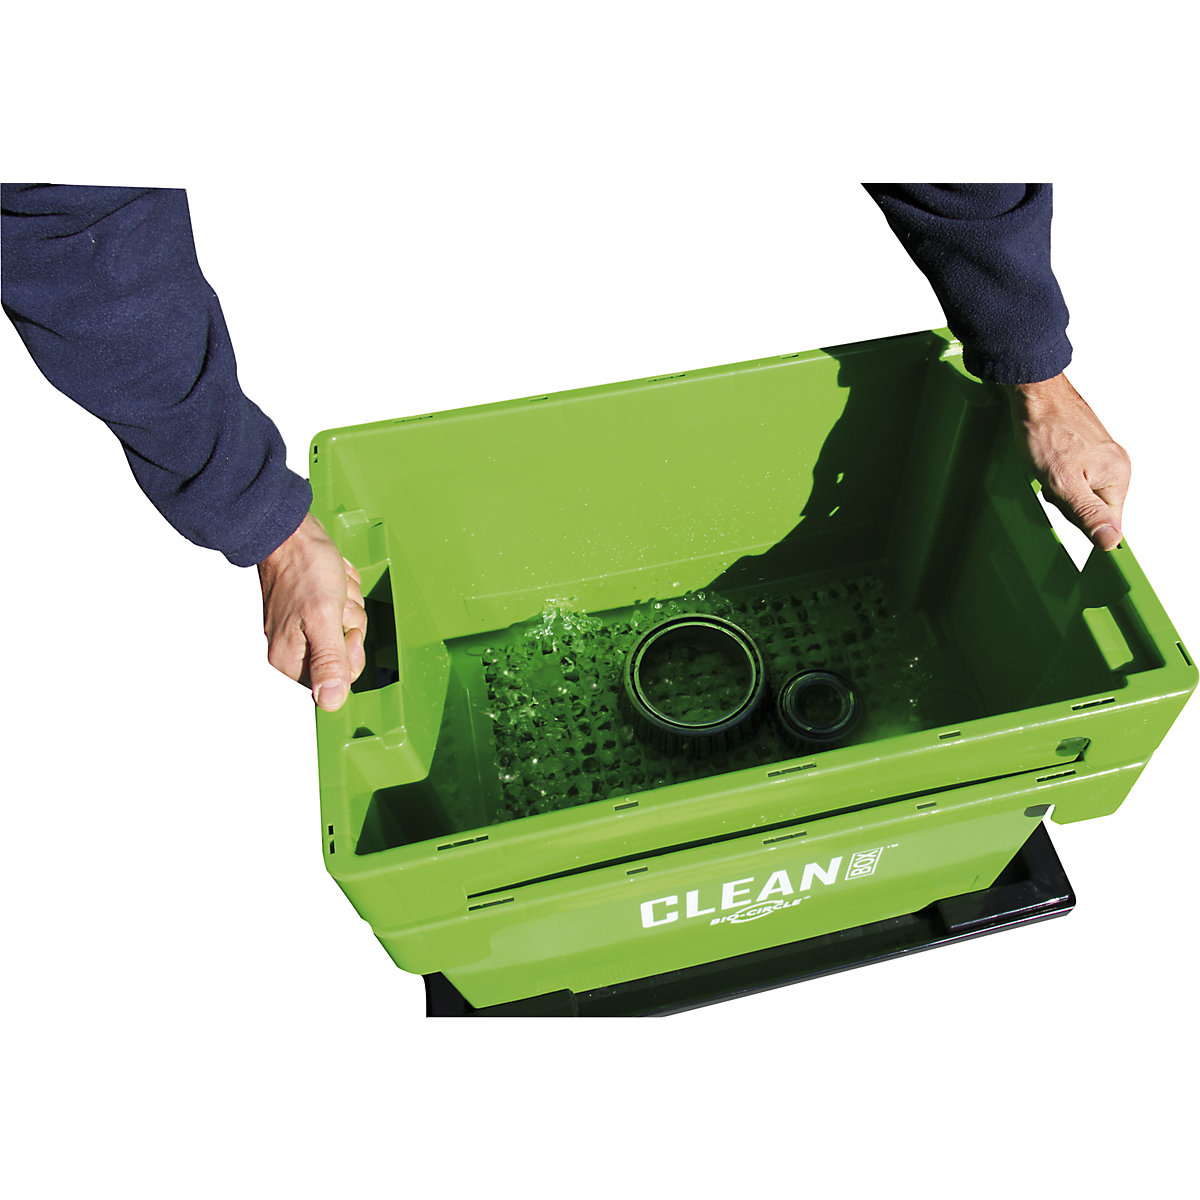 Stanowisko czyszczenia małych części CLEAN BOX – Bio-Circle (Zdjęcie produktu 2)-1